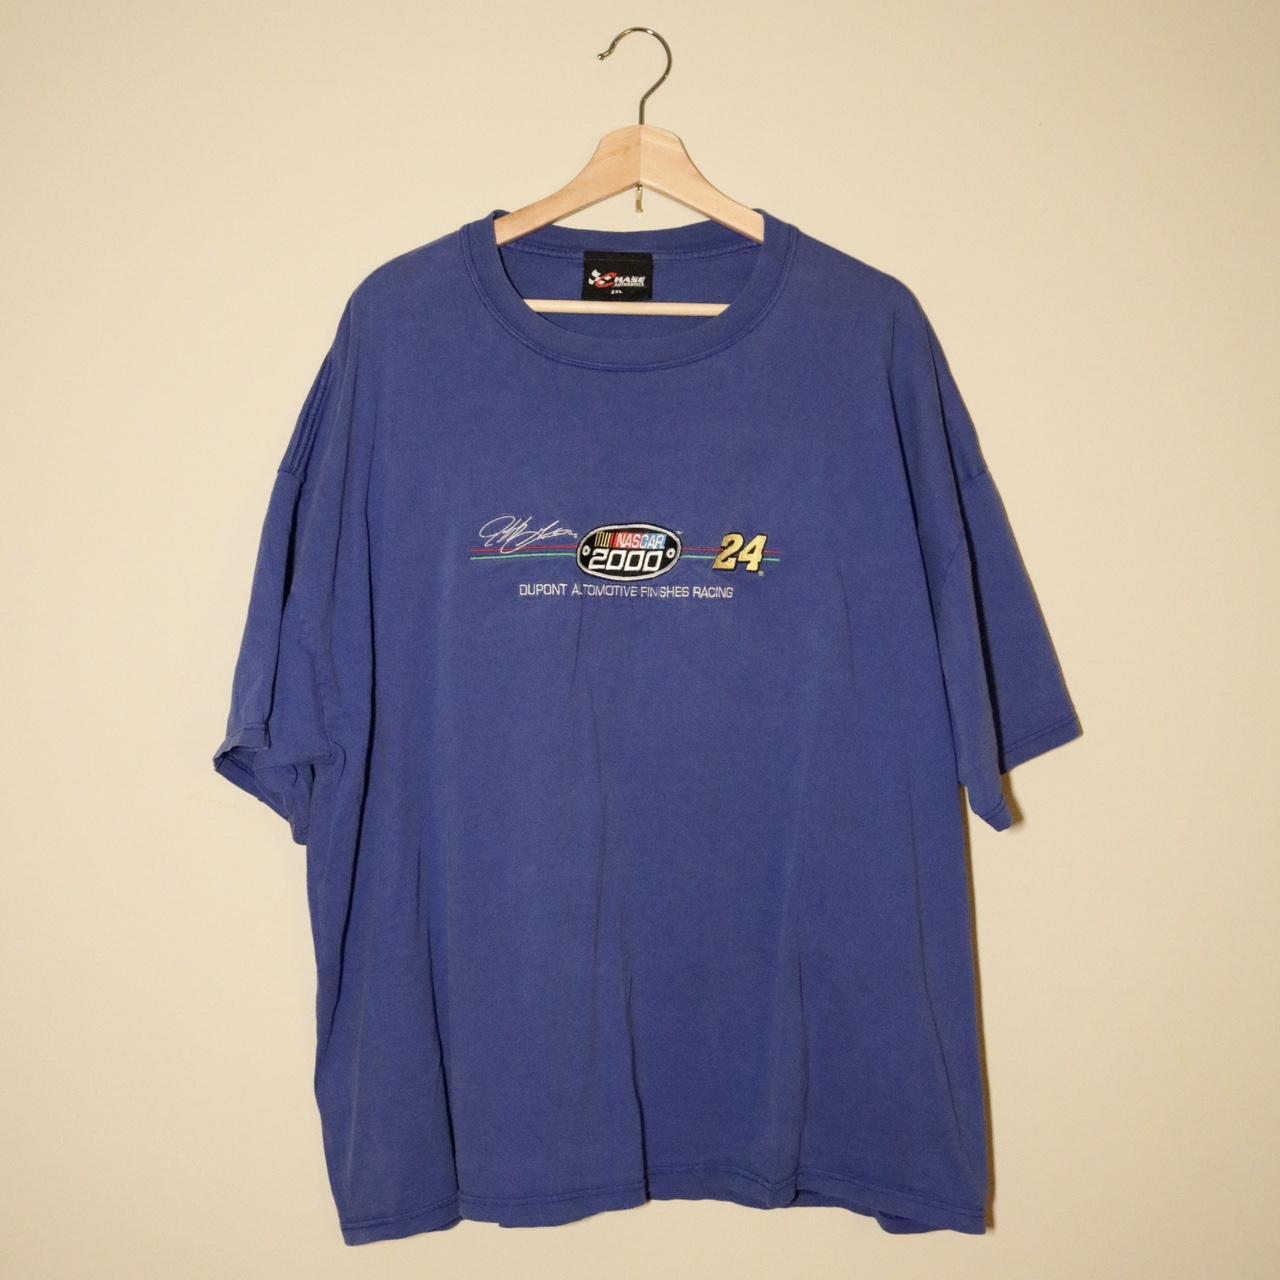 Chase Authentics Men's Blue T-shirt